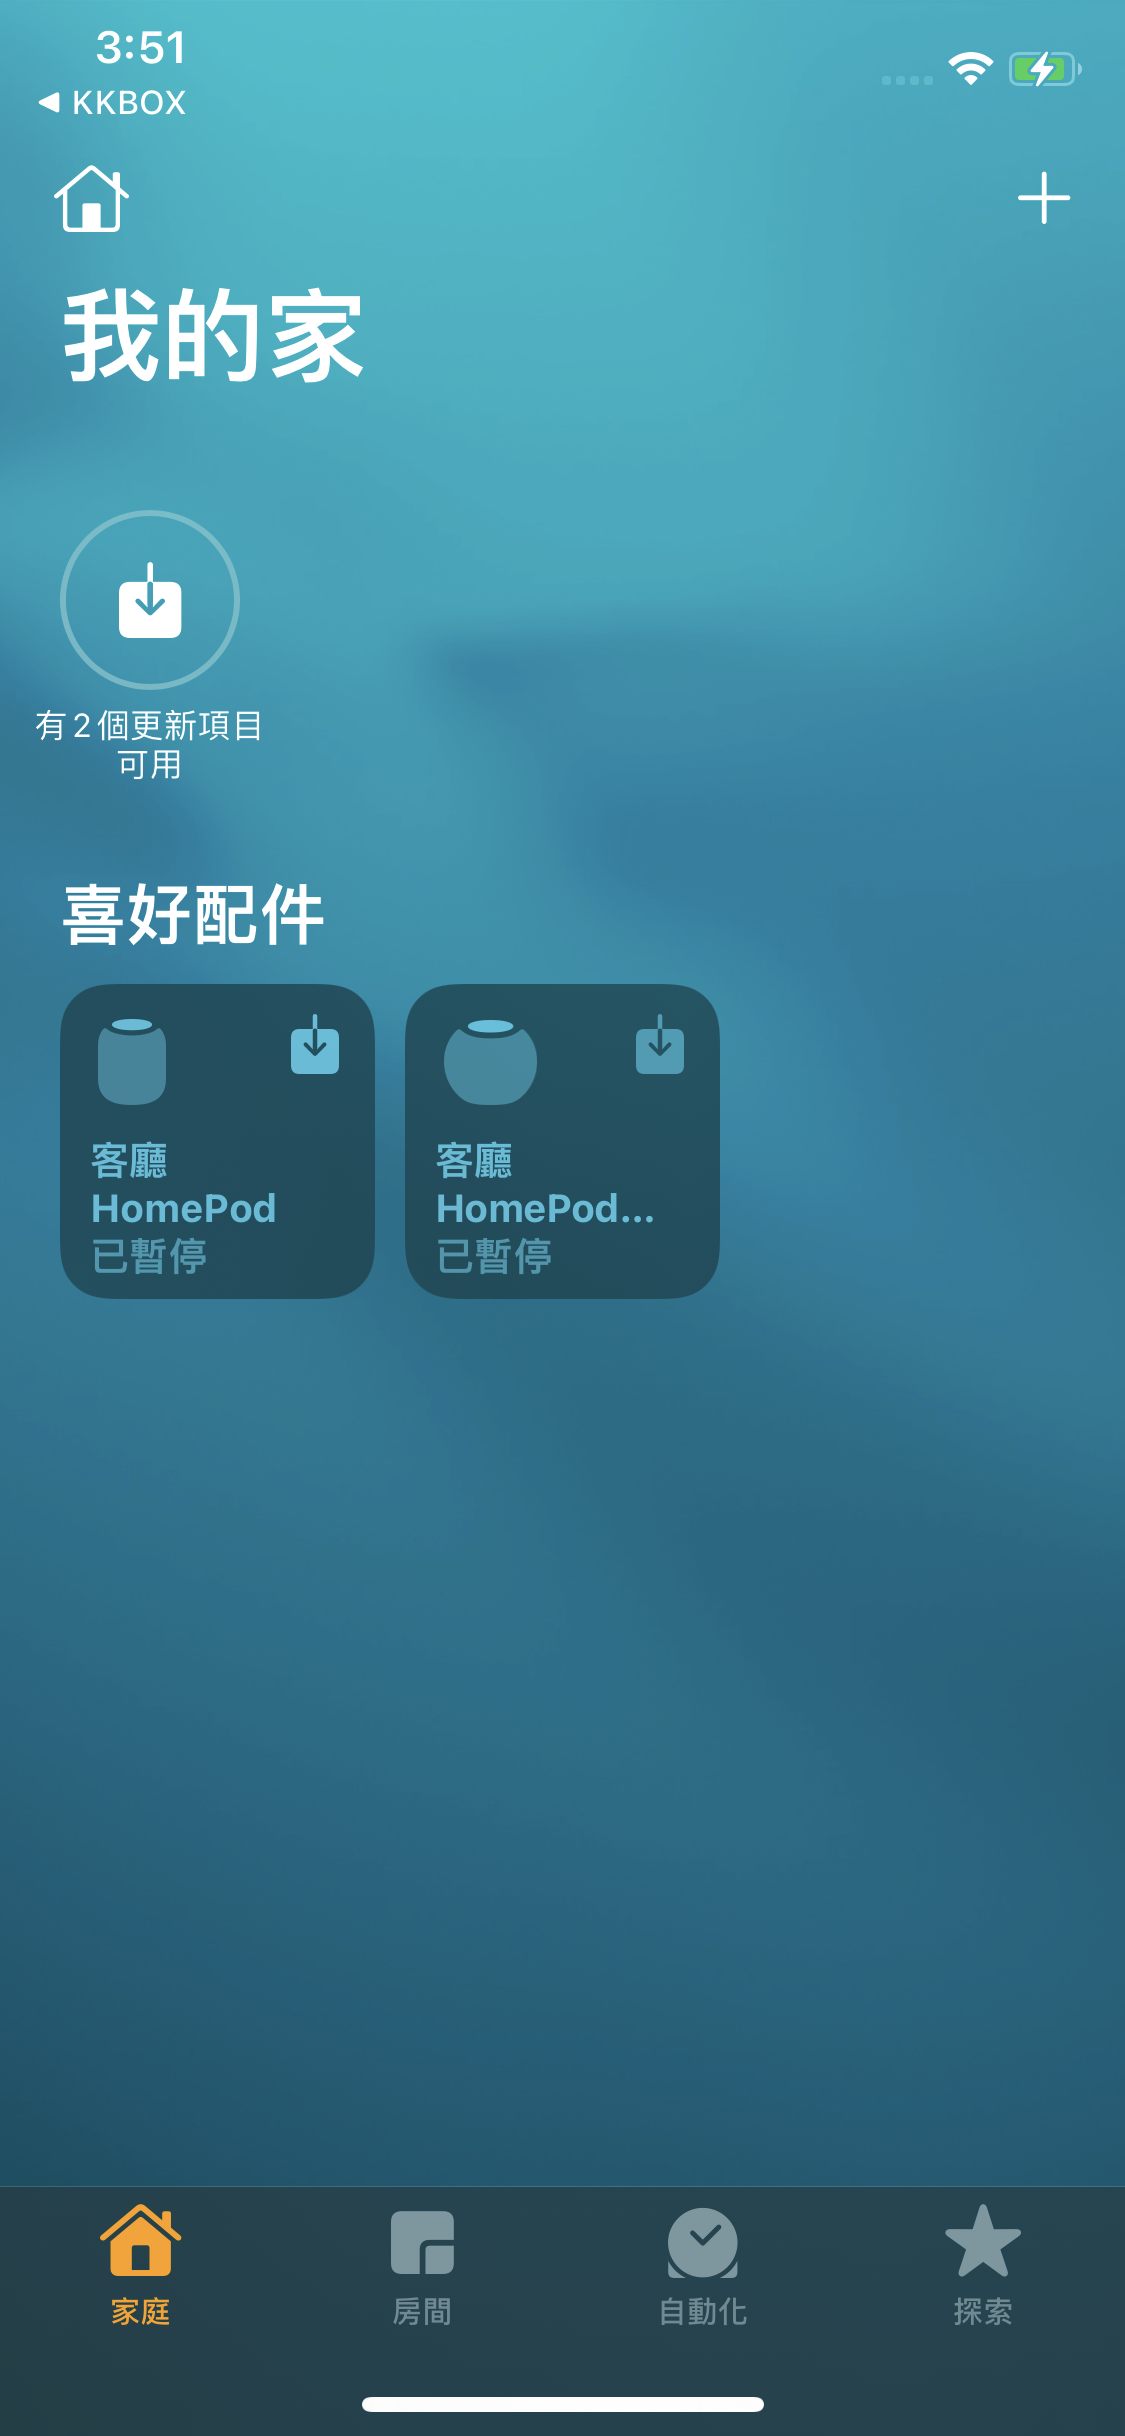 將 KKBOX 設定為 HomePod 預設音樂服務 - 5